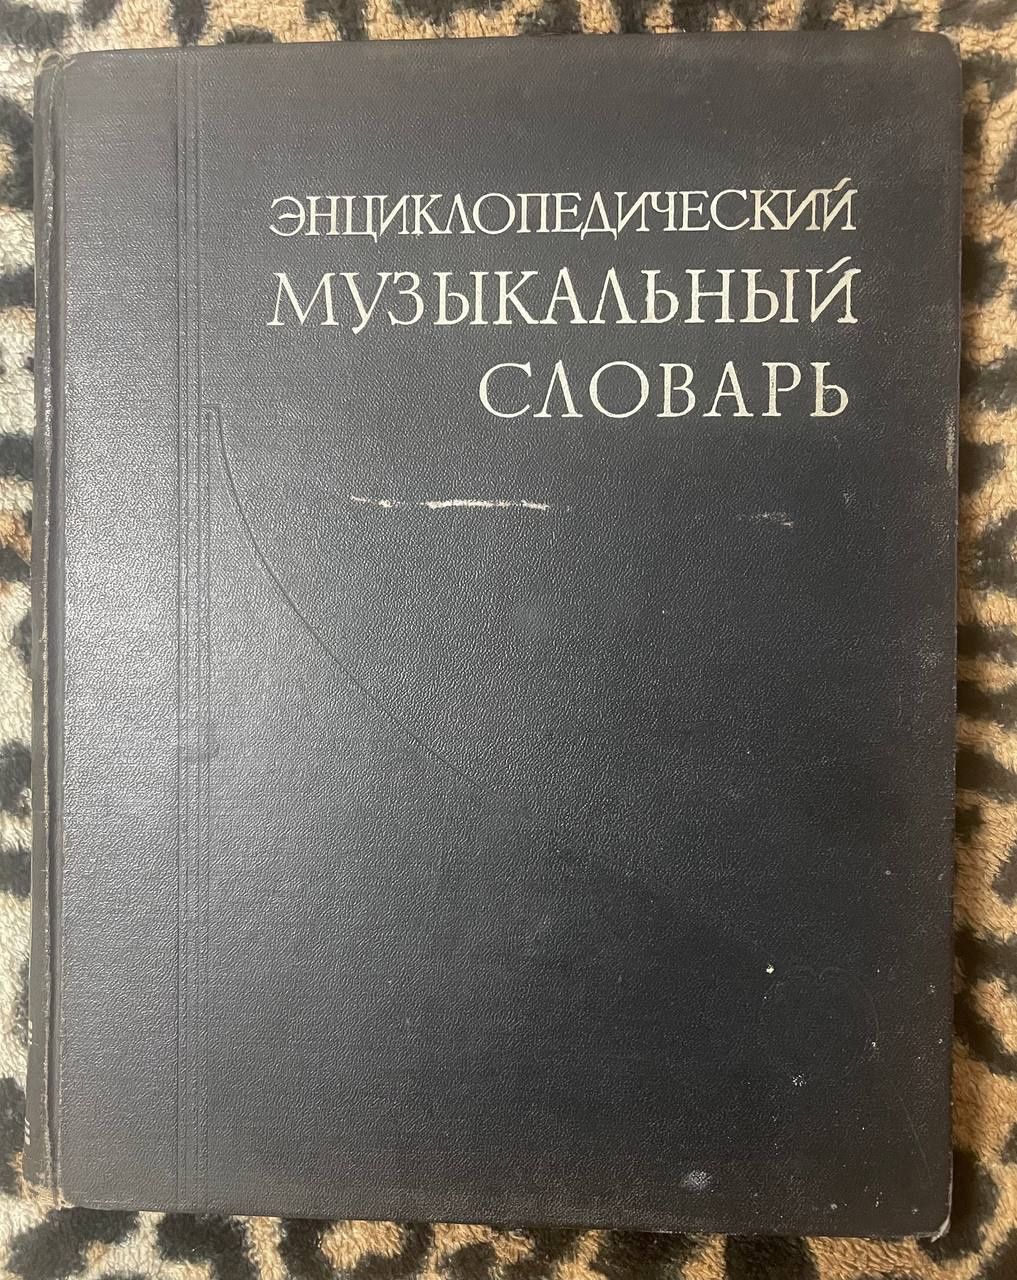 Продам словарь музыкальный энциклопедический